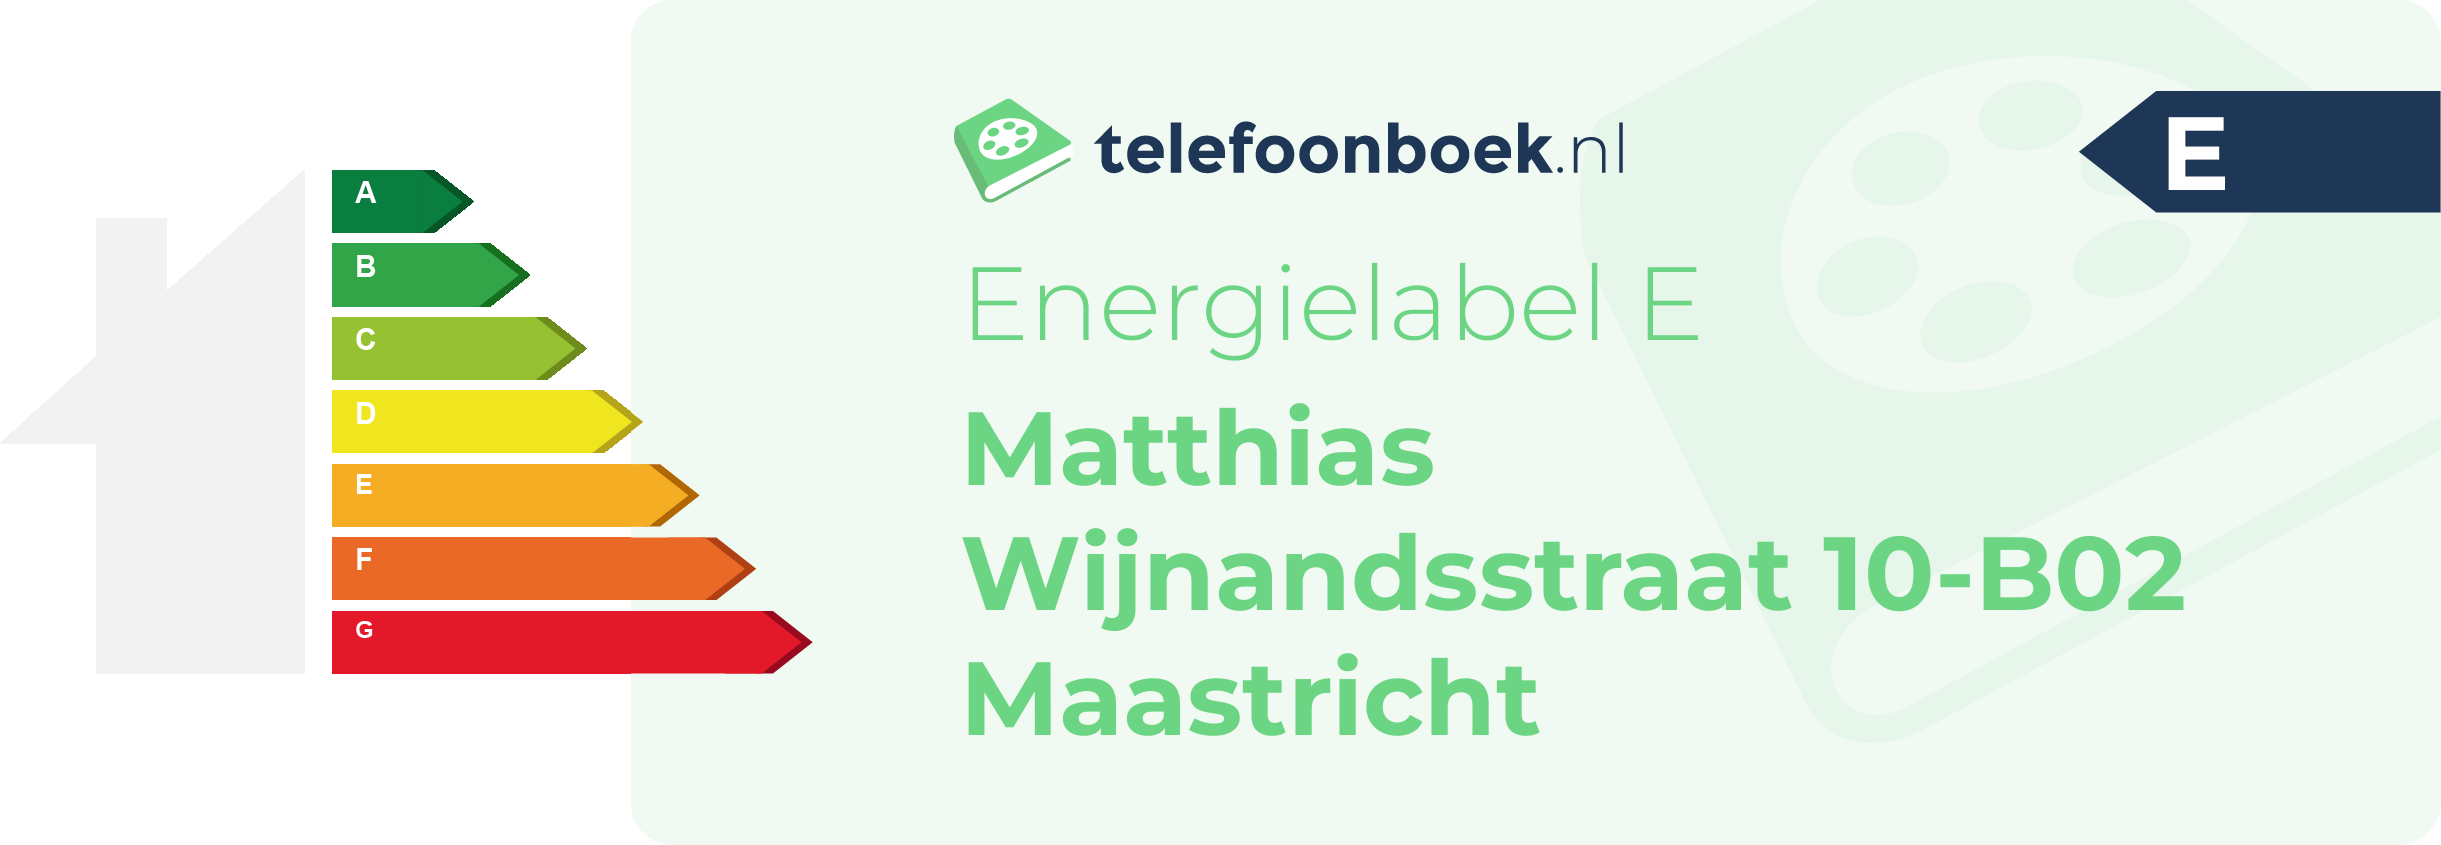 Energielabel Matthias Wijnandsstraat 10-B02 Maastricht